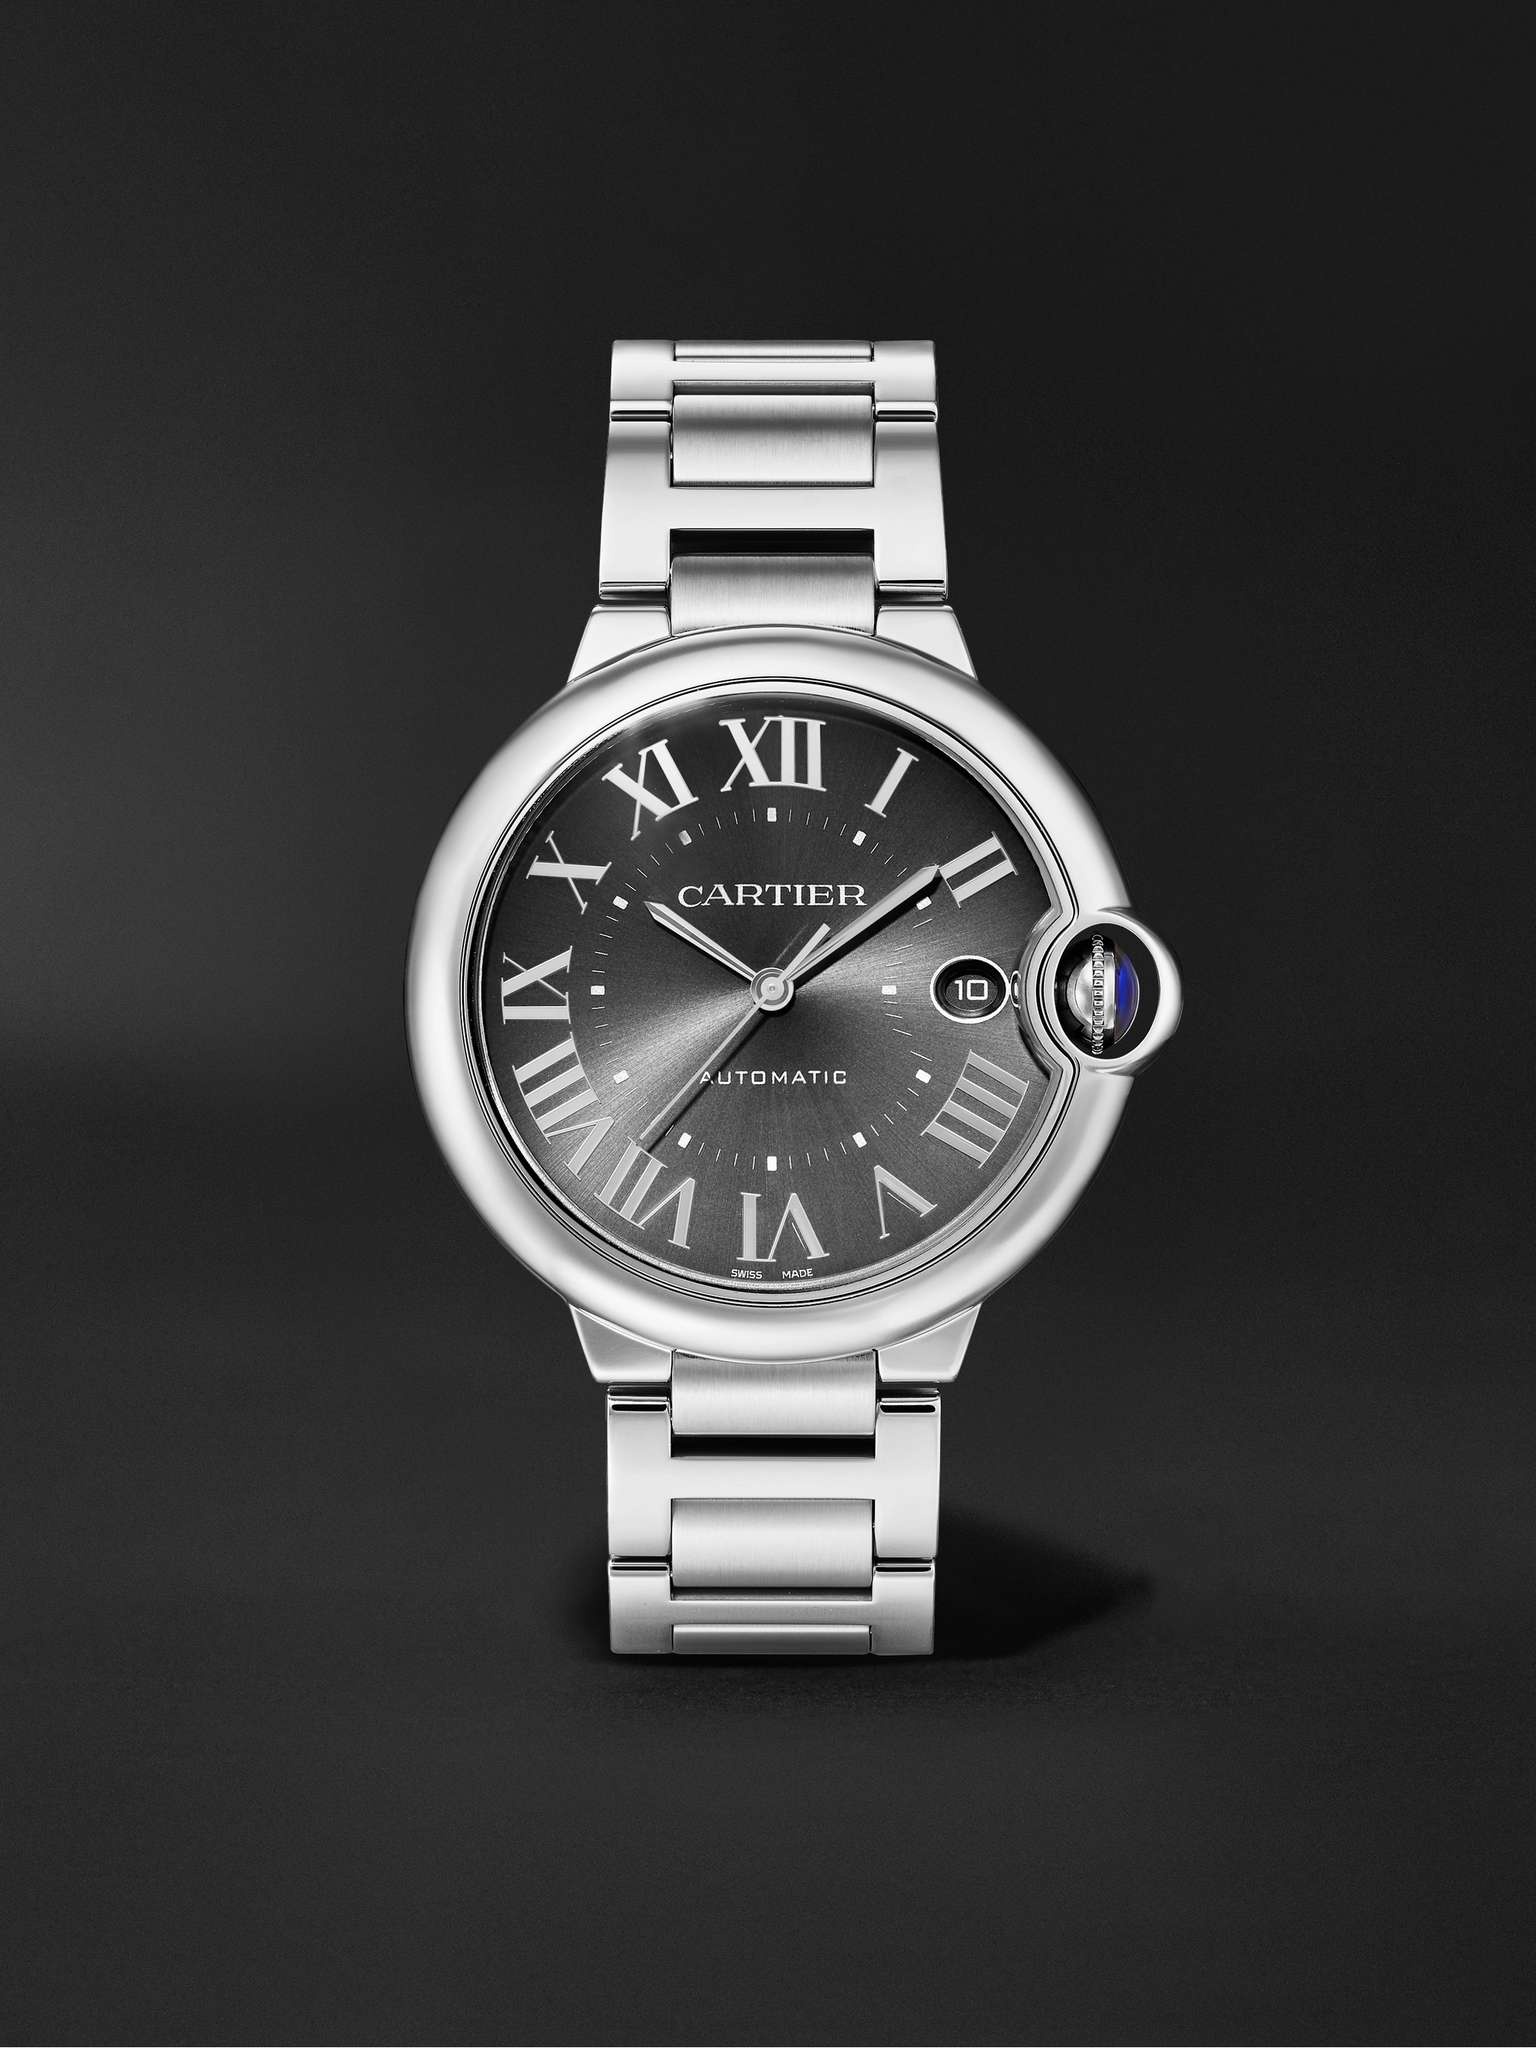 Ballon Bleu de Cartier Automatic 40mm Stainless Steel Watch, Ref. No. WSBB0060 - 1